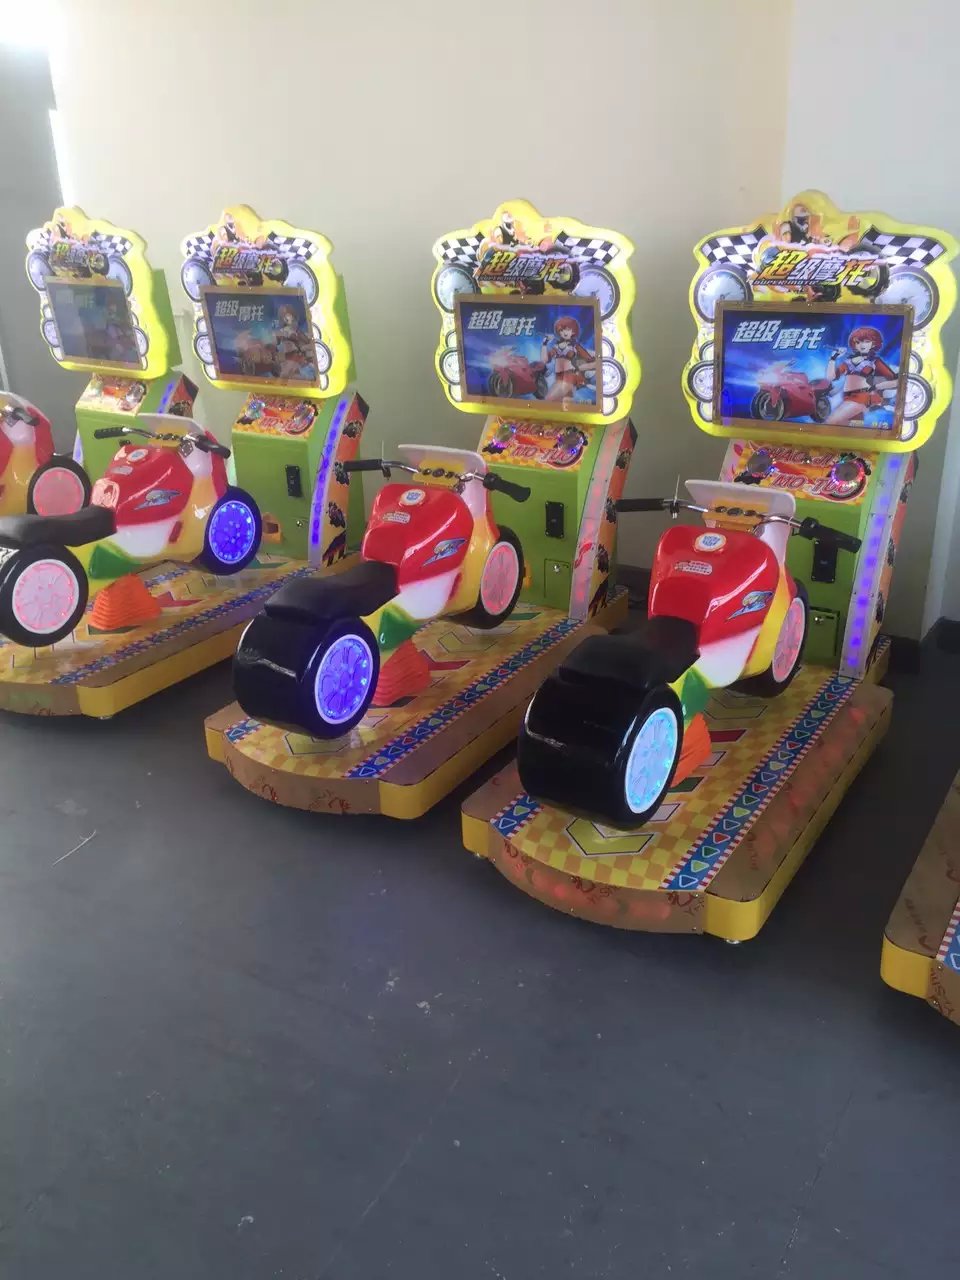 新品超级摩托游艺机 儿童投币赛车游戏机 淘气堡乐园电玩设备